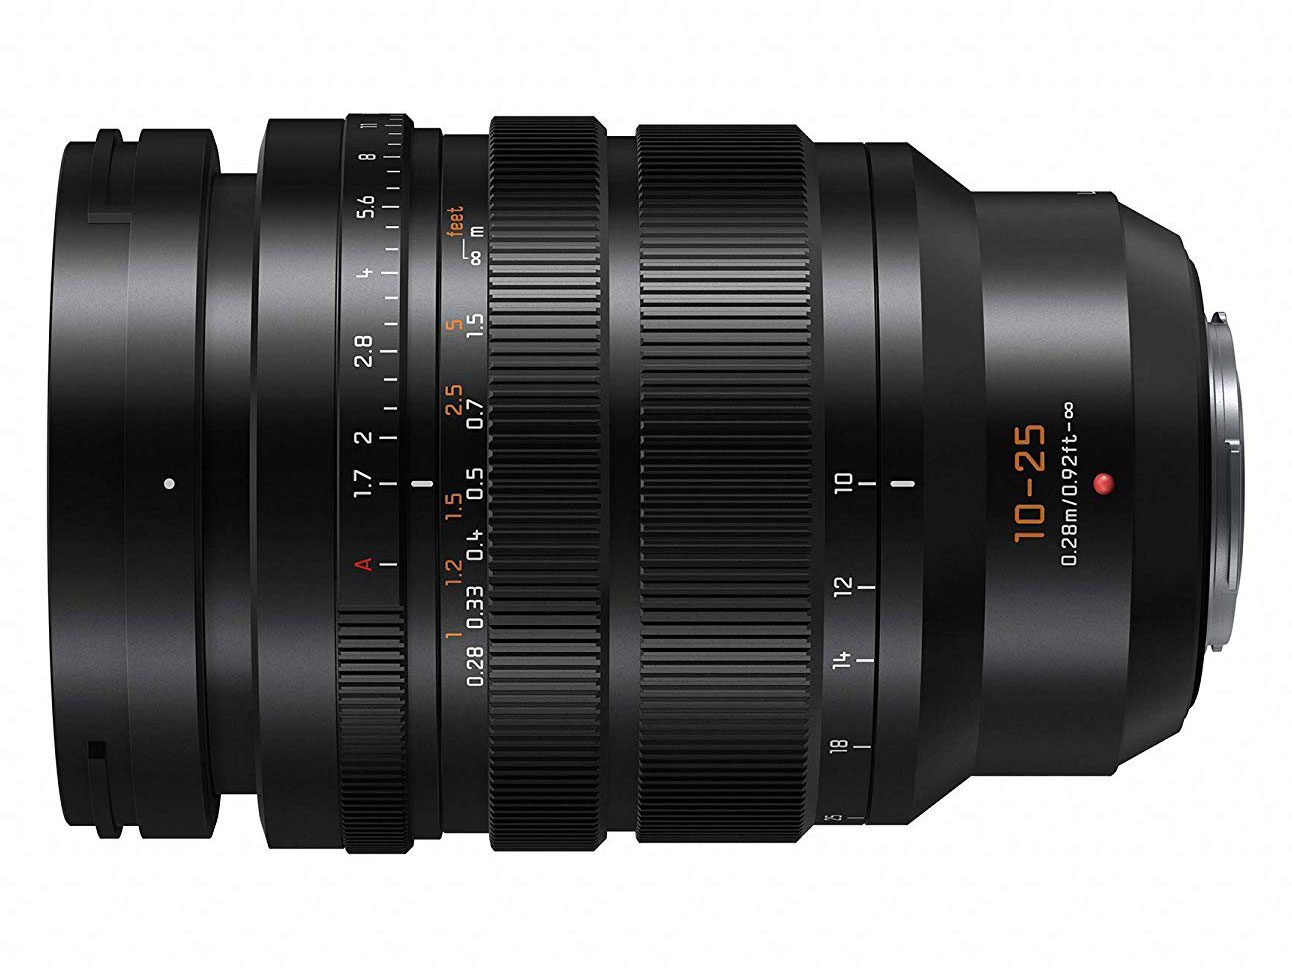 Panasonic bắt đầu bán ống kính Leica DG Vario - Summilux 10-25mm f/1.7 từ tháng 7/2019 | 50mm Vietnam